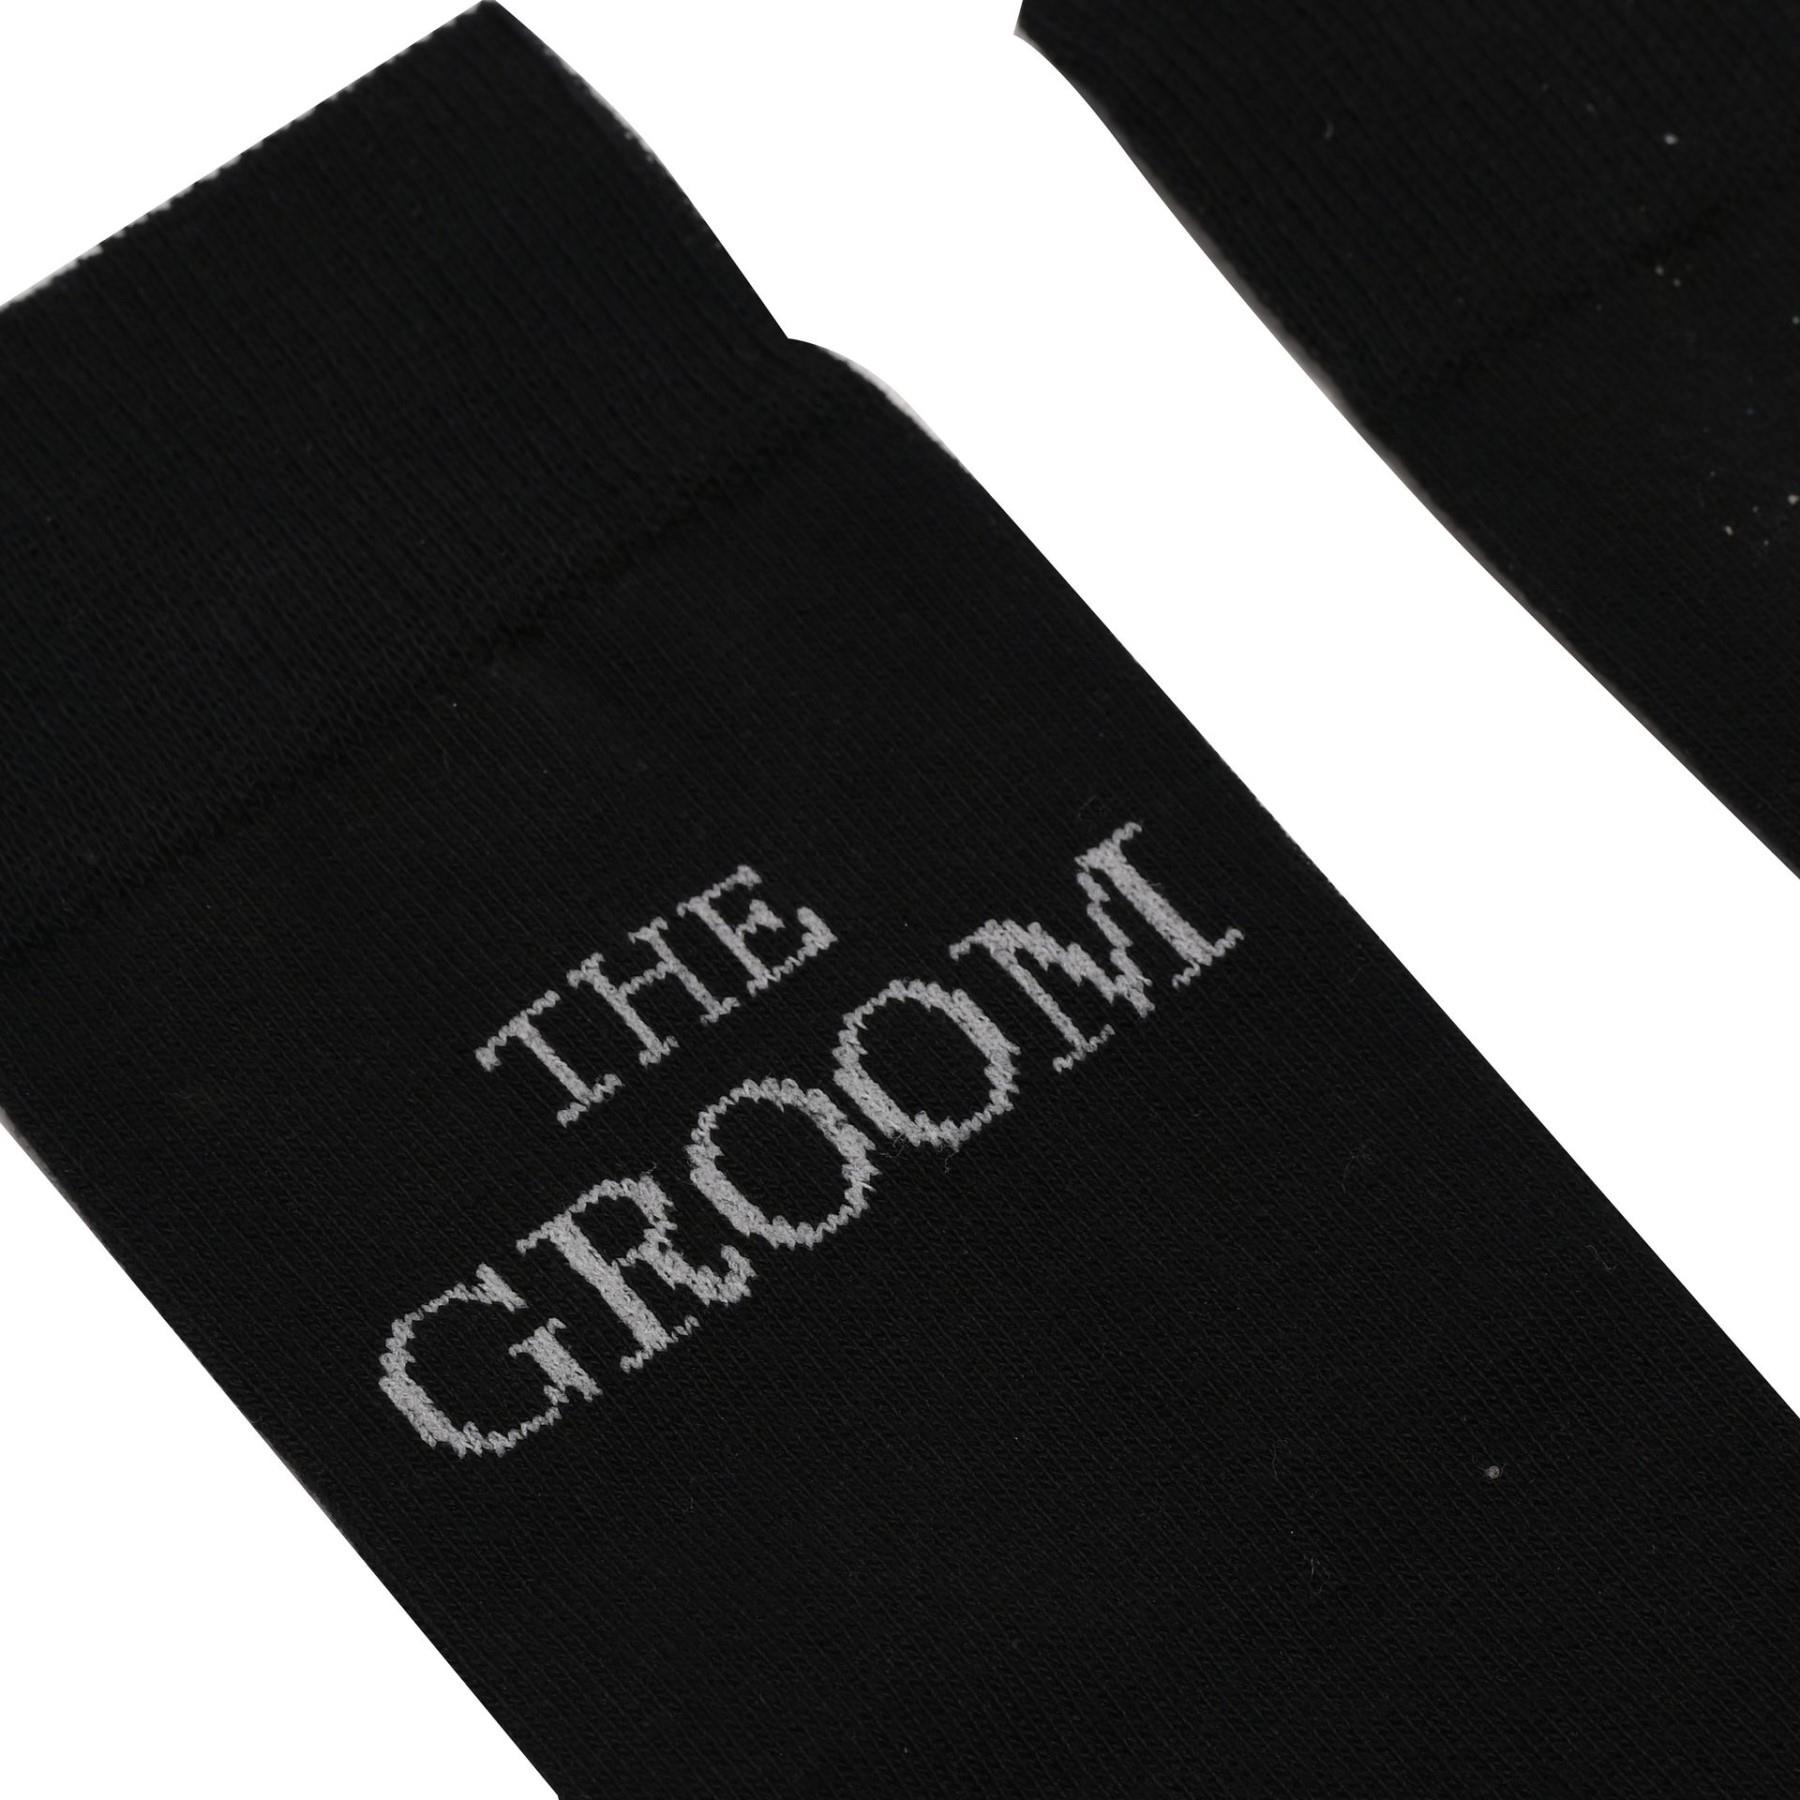 Men's Black Socks Wedding Gift - The Groom